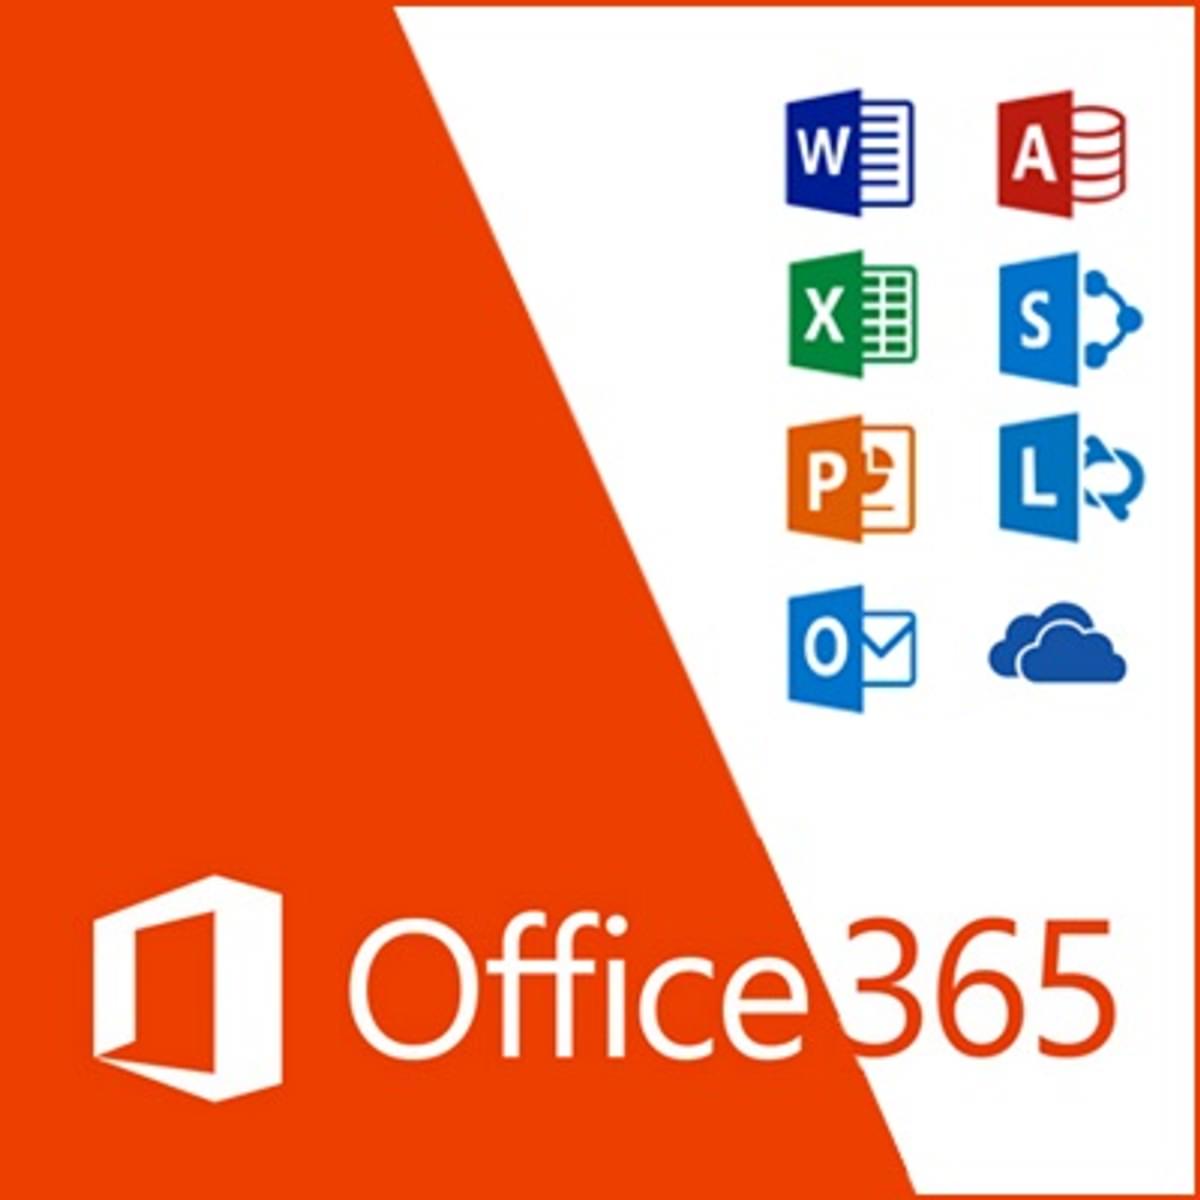 Hackers nemen via legitieme links Microsoft Office 365 account over image